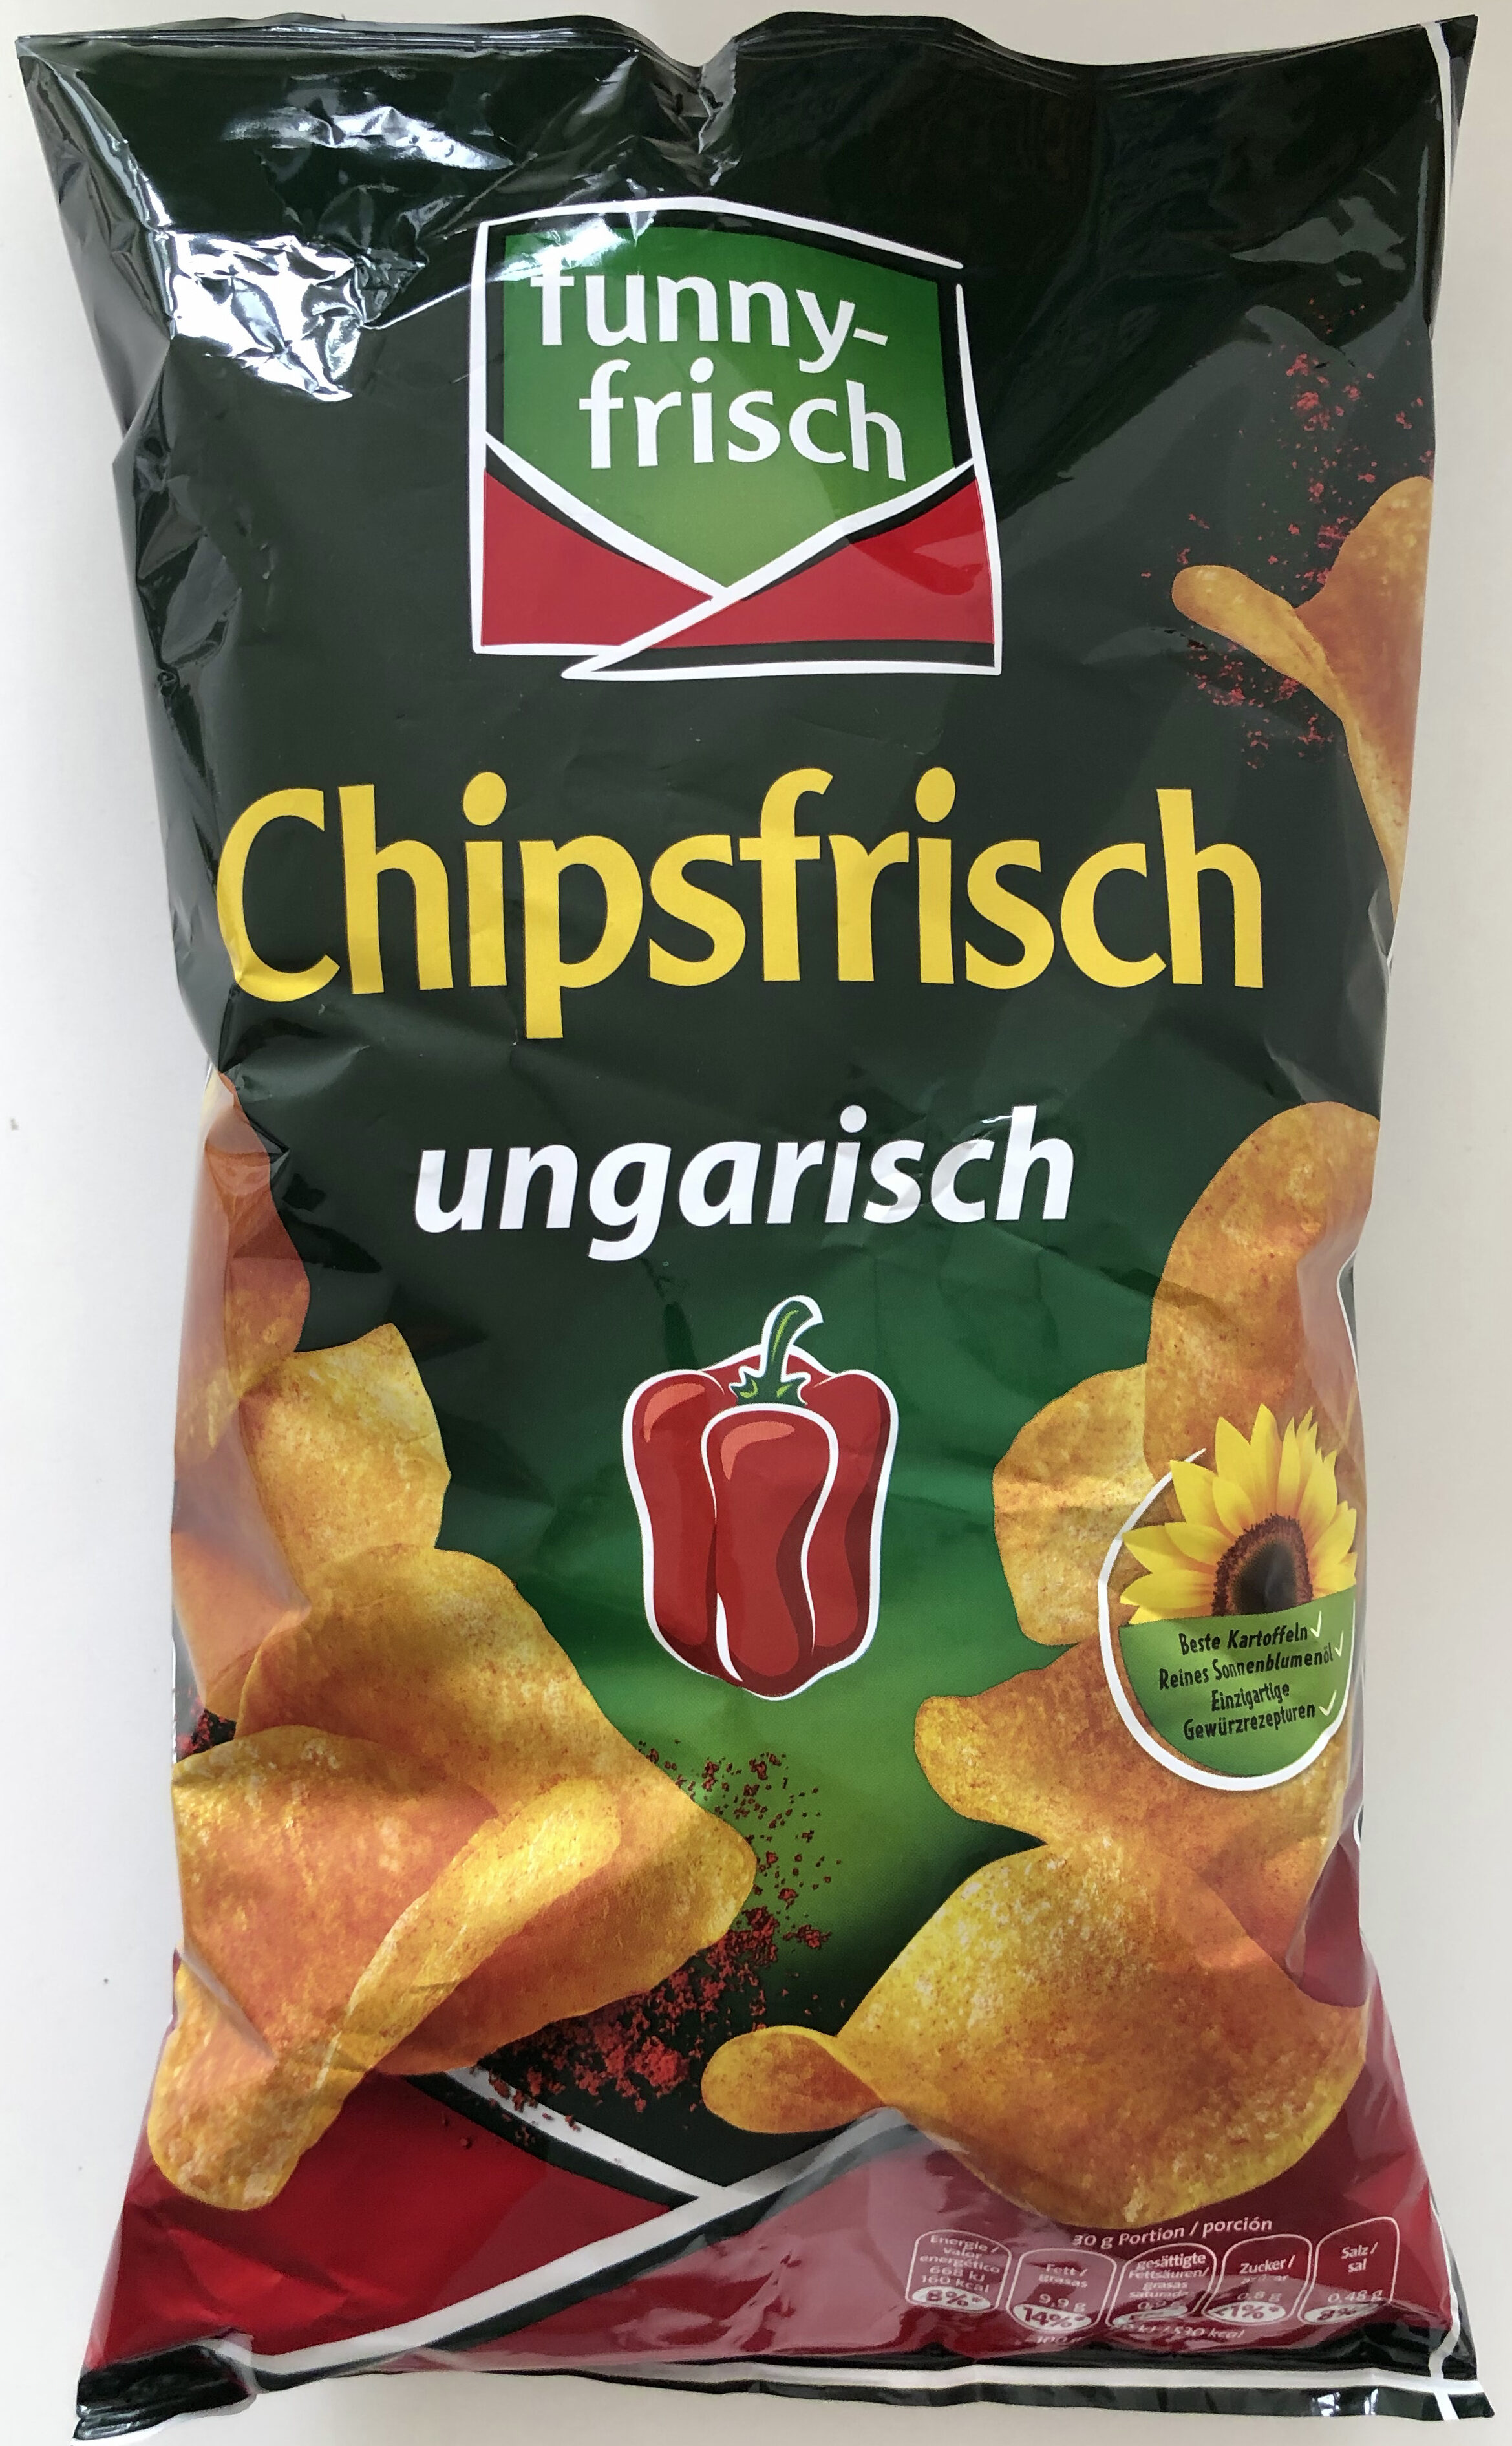 Chipsfrisch ungarisch - Product - de